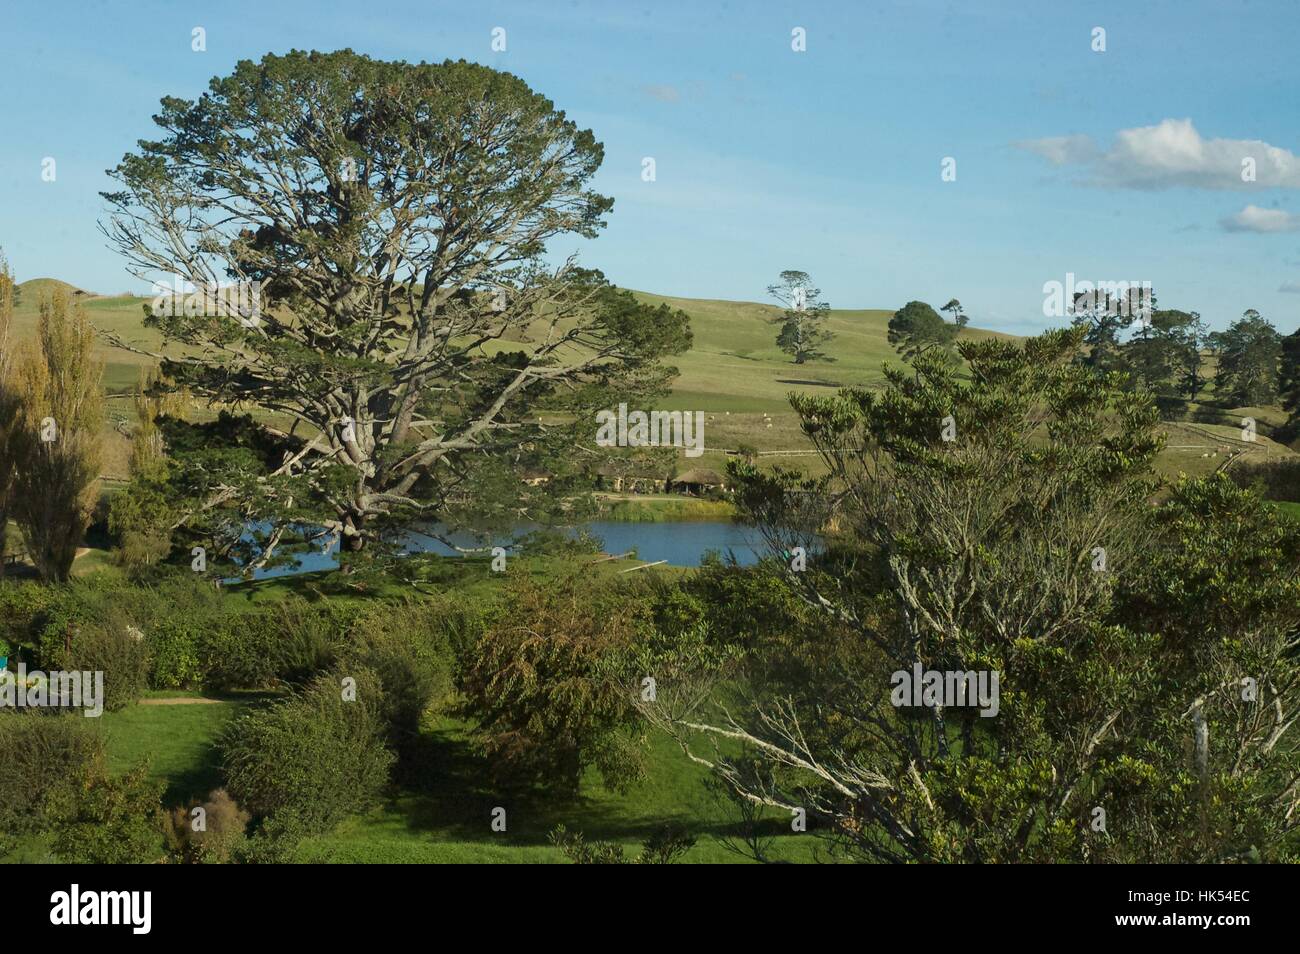 New Zealand landscape. Stock Photo